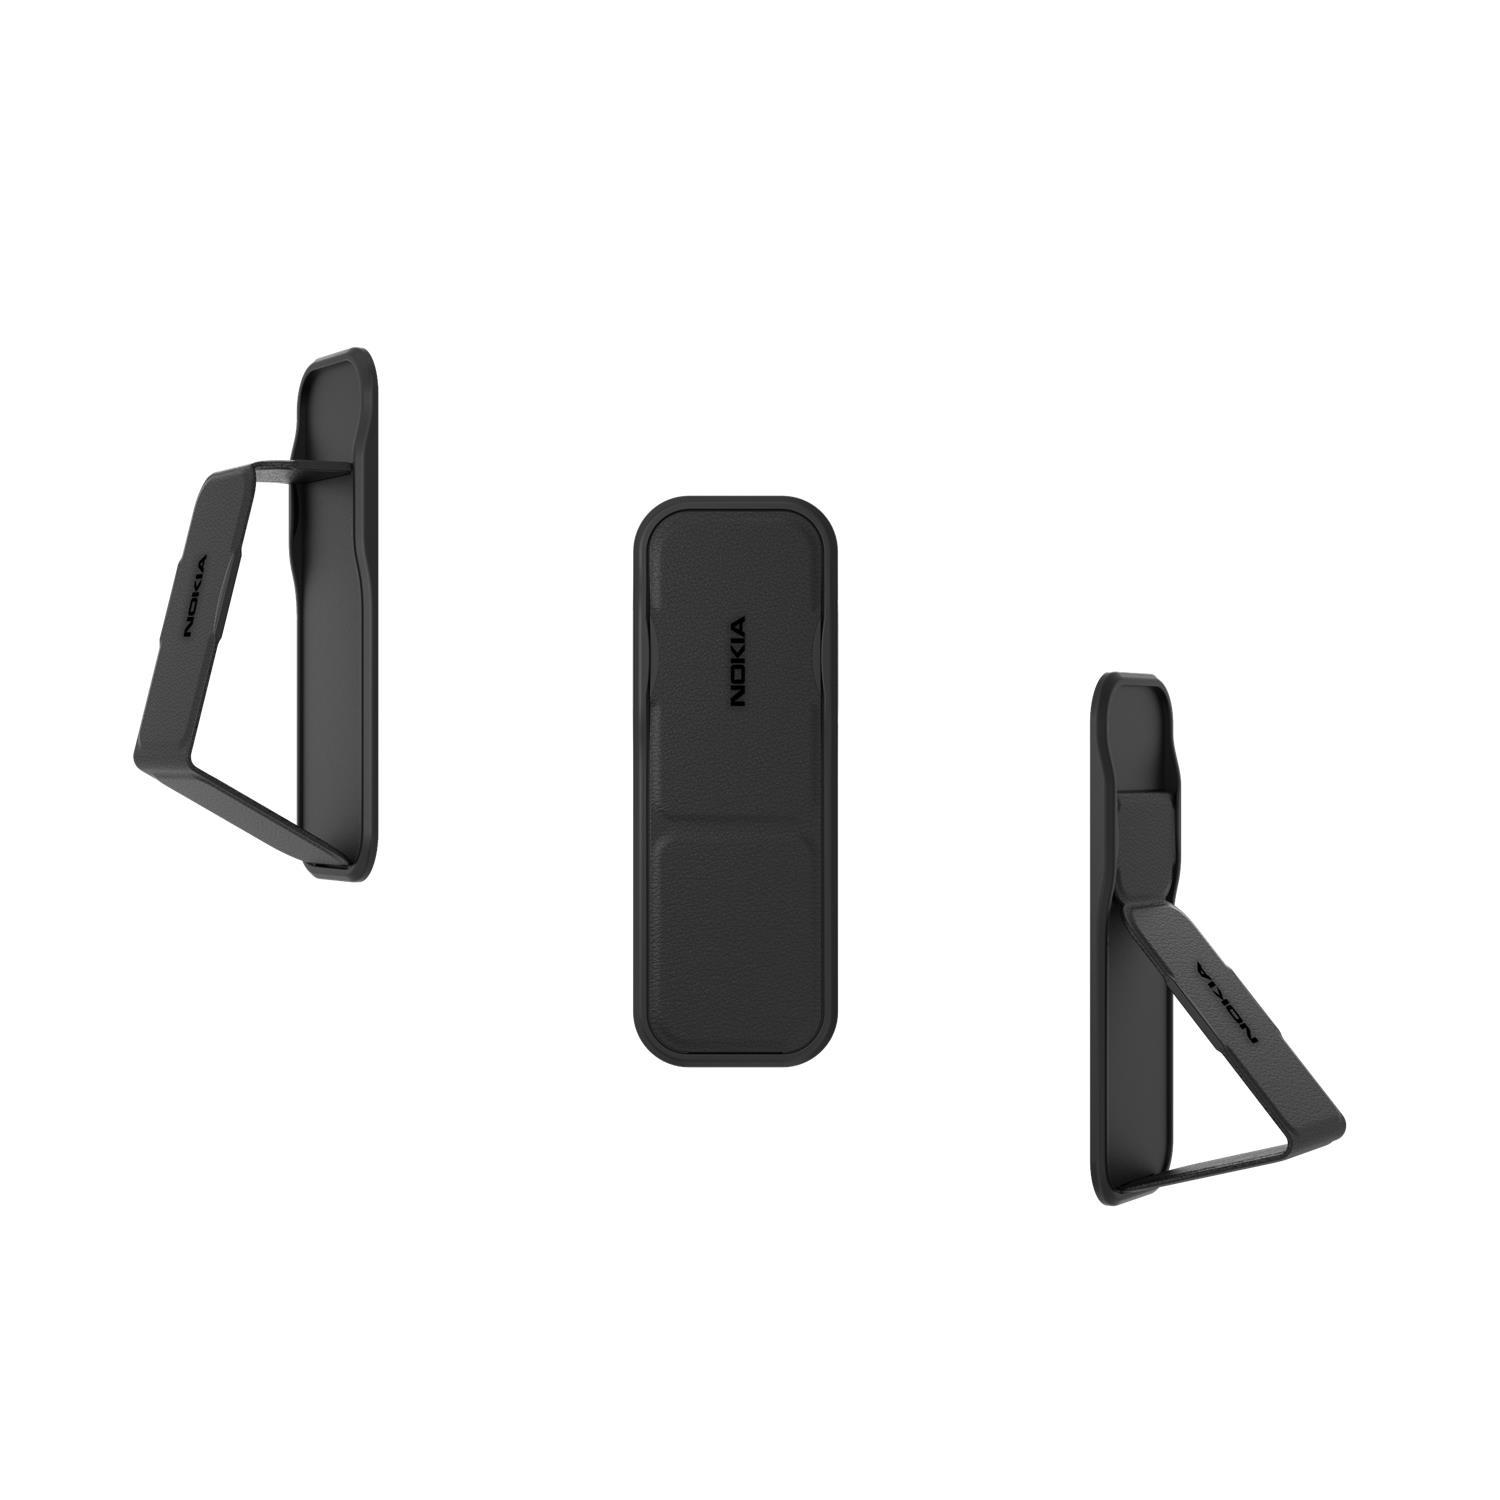 Nokia Clckr Phone Stand & Grip (CL-002) - Schwarz